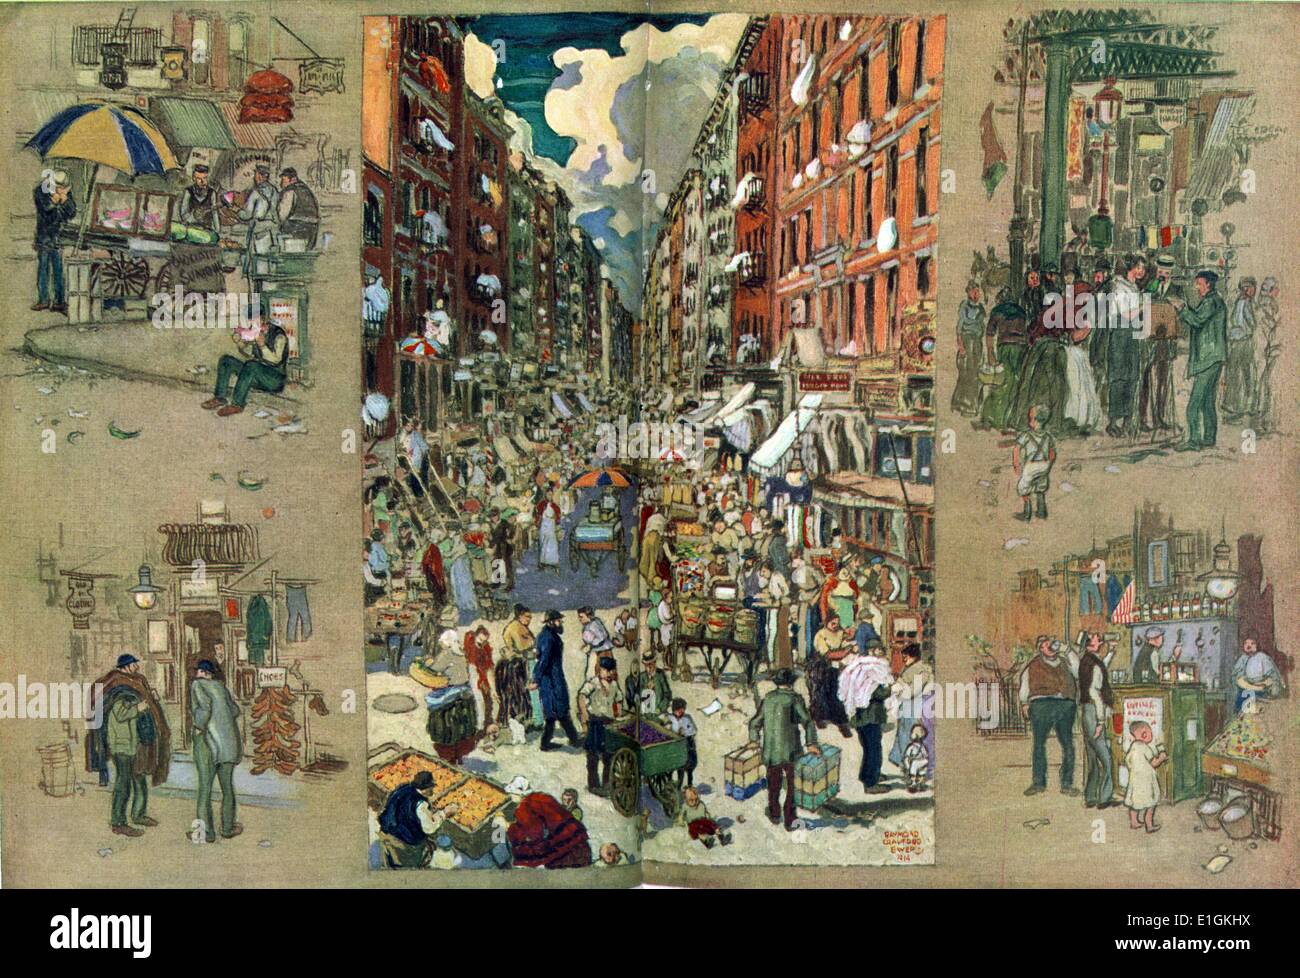 Giorni d'estate sull'East Side di New York da Raymond Crawford Ewer 1914; la pittura mostra una strada affollata tra tenement edifici, con i venditori ambulanti di rivestimento del street, anche viste vignette di vetrine, fornitori e una riunione sociale su un angolo di strada, eventualmente attorno ad un fotografo. Foto Stock